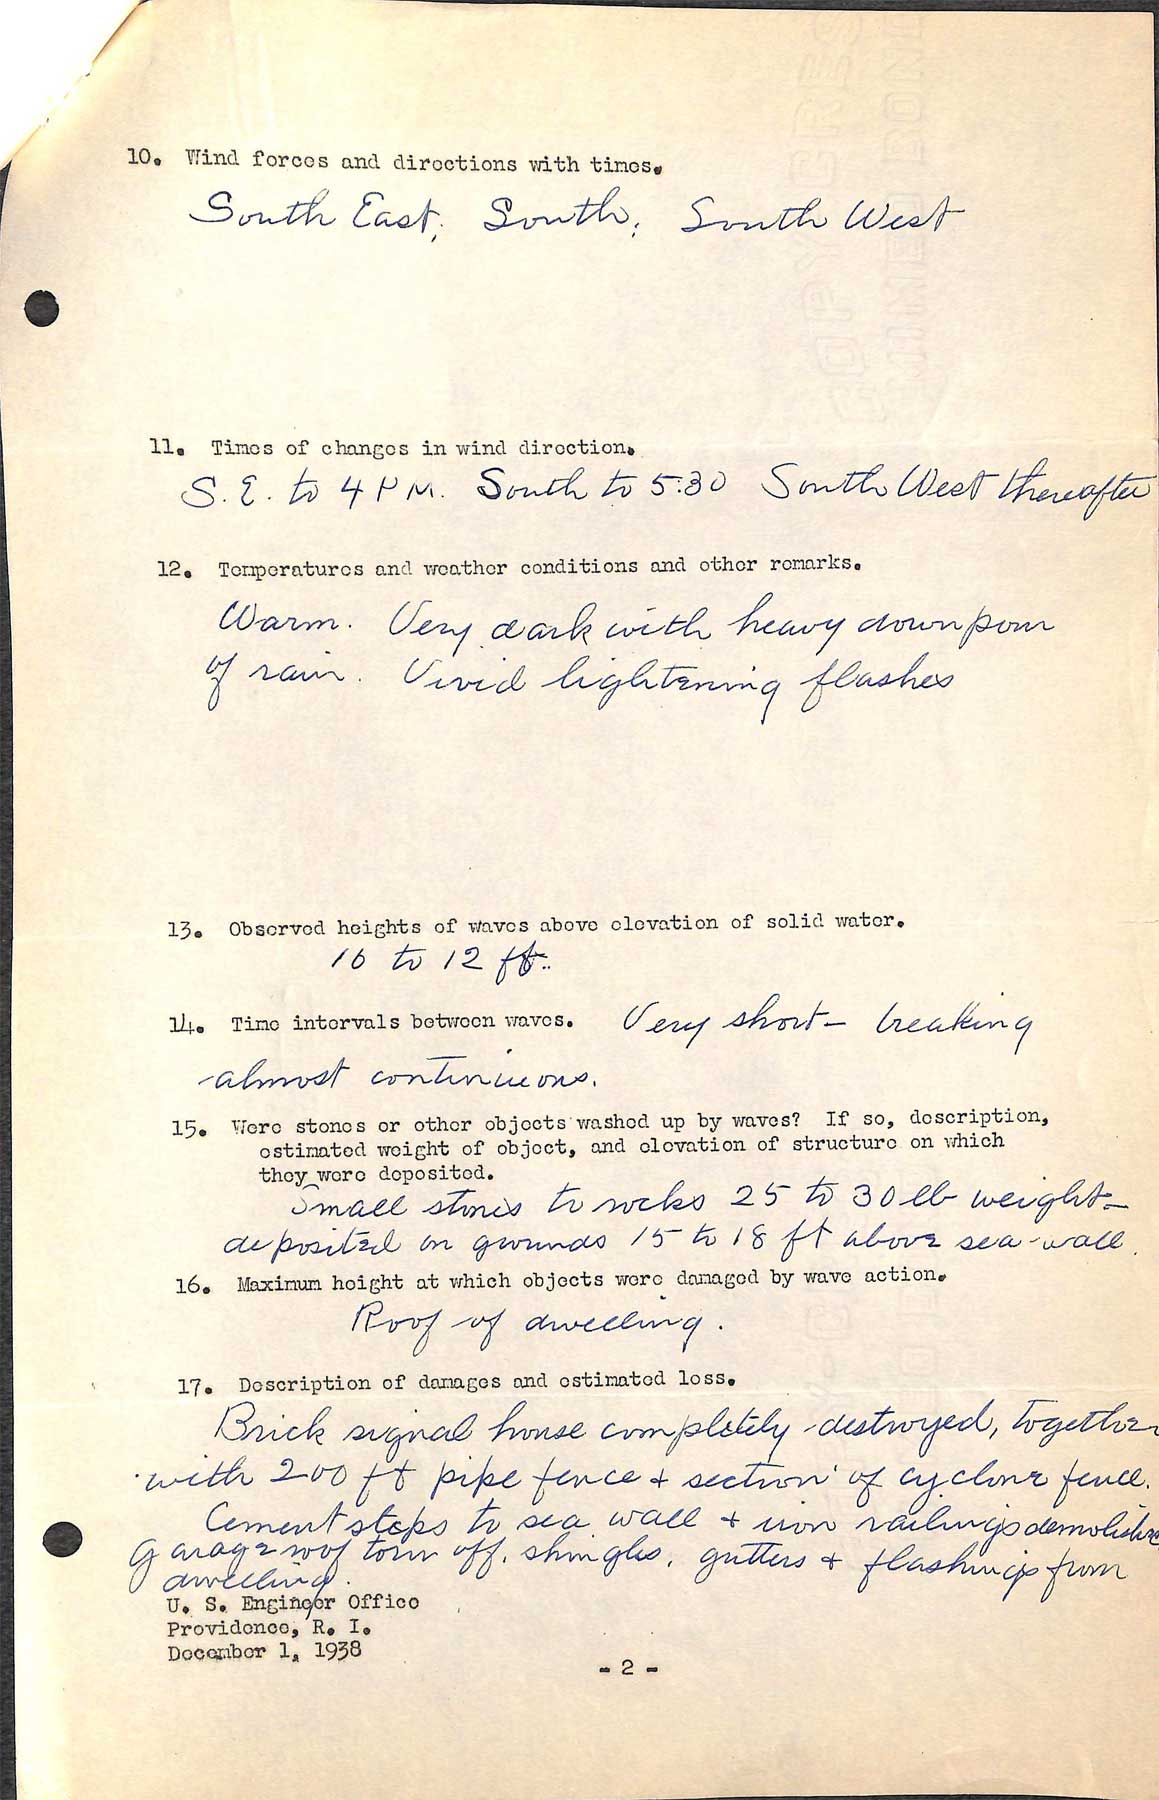 Warwick Light - A questionnaire regarding the hurricane of September 21, 1938